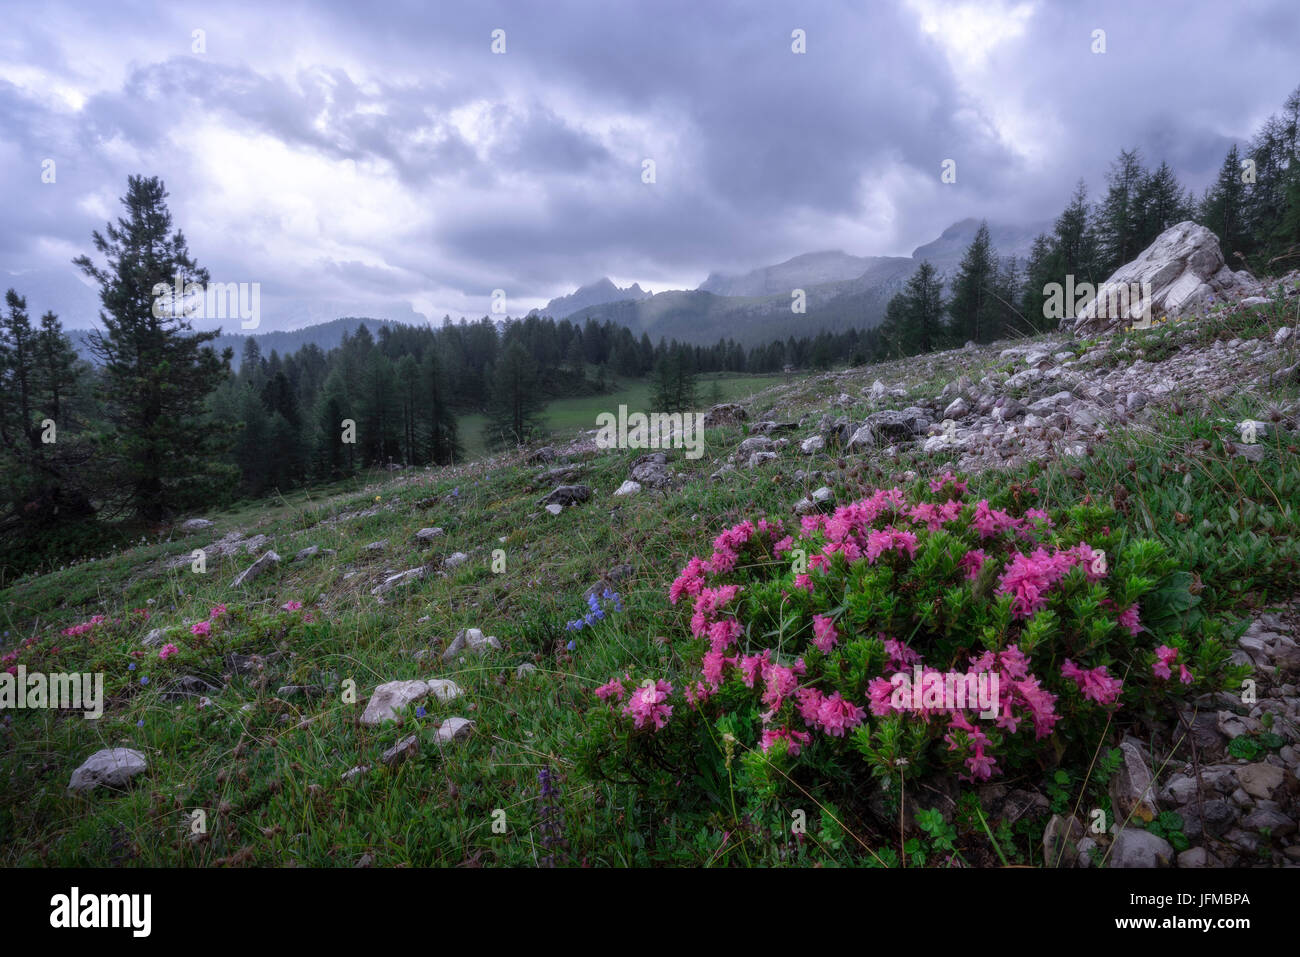 Lastoi de Formin, Dolomites, Cortina d'Ampezzo, Veneto, Belluno, Italy, A small group of Rhododendron Stock Photo